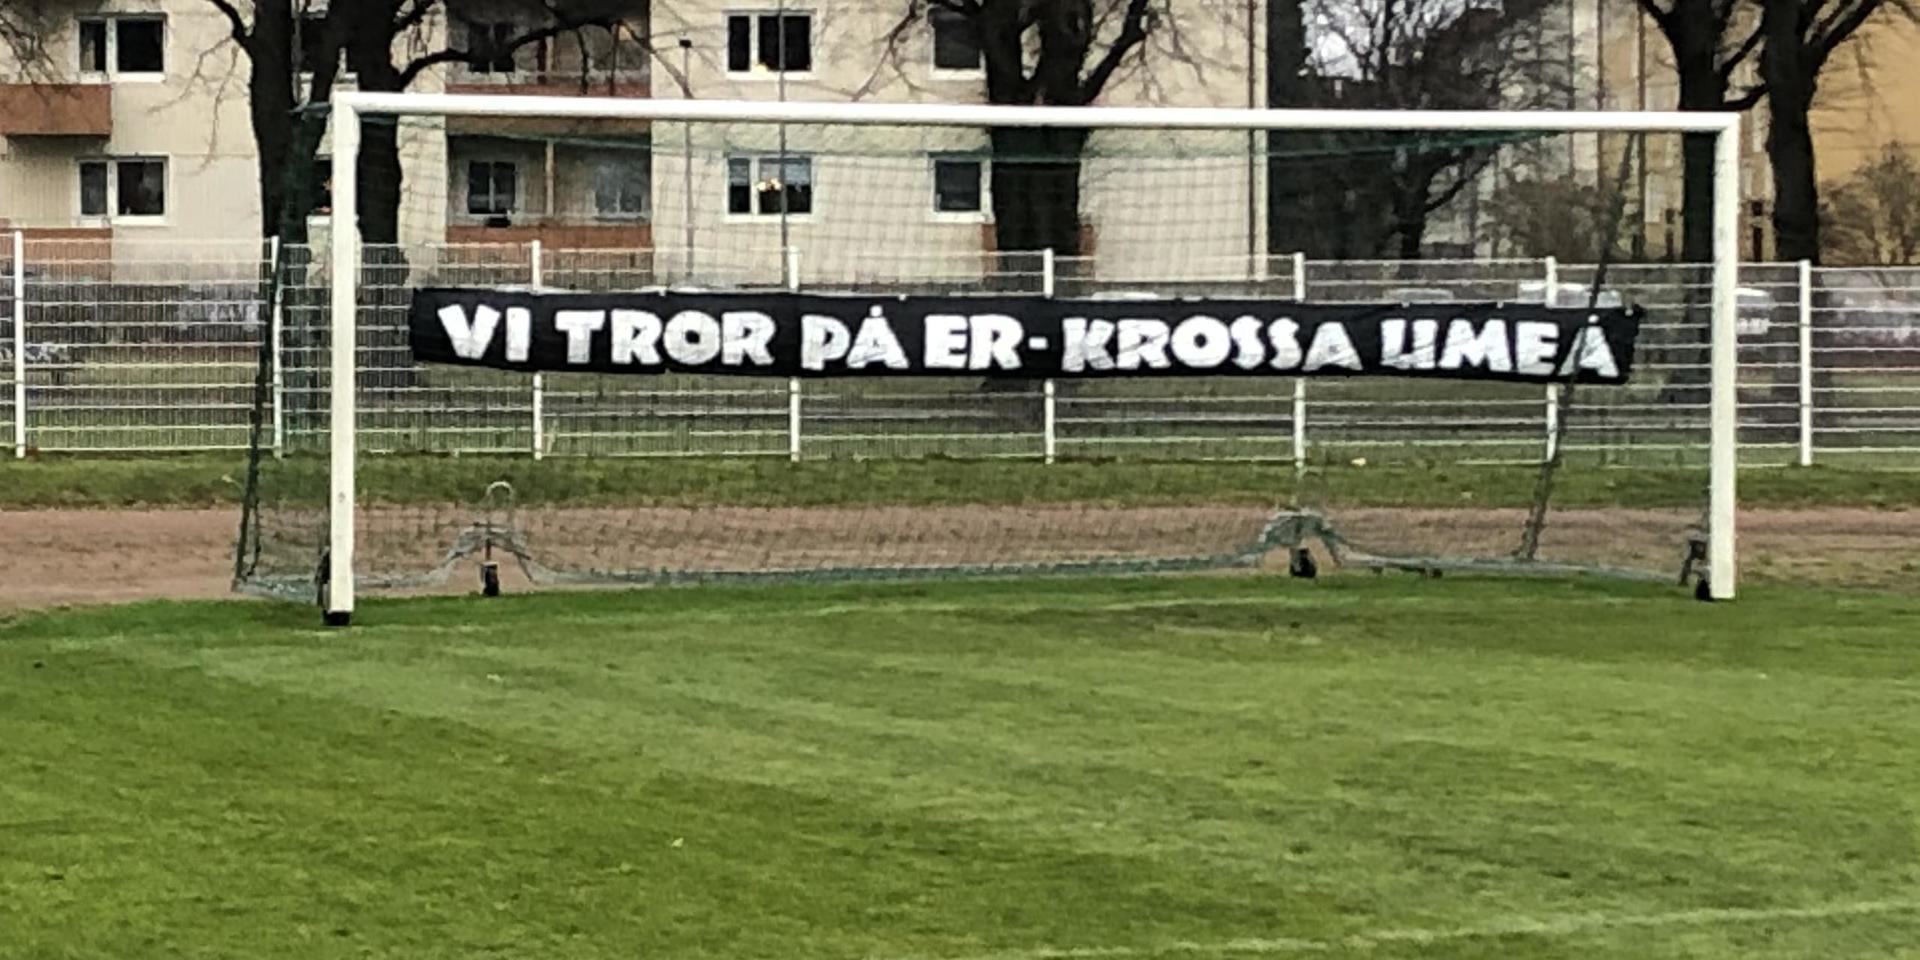 Öis har under avslutningen av superettan valt att stänga klubbens träningar för besök, men på Gamlestadsvallen hade fansen förberett med en banderoll. 